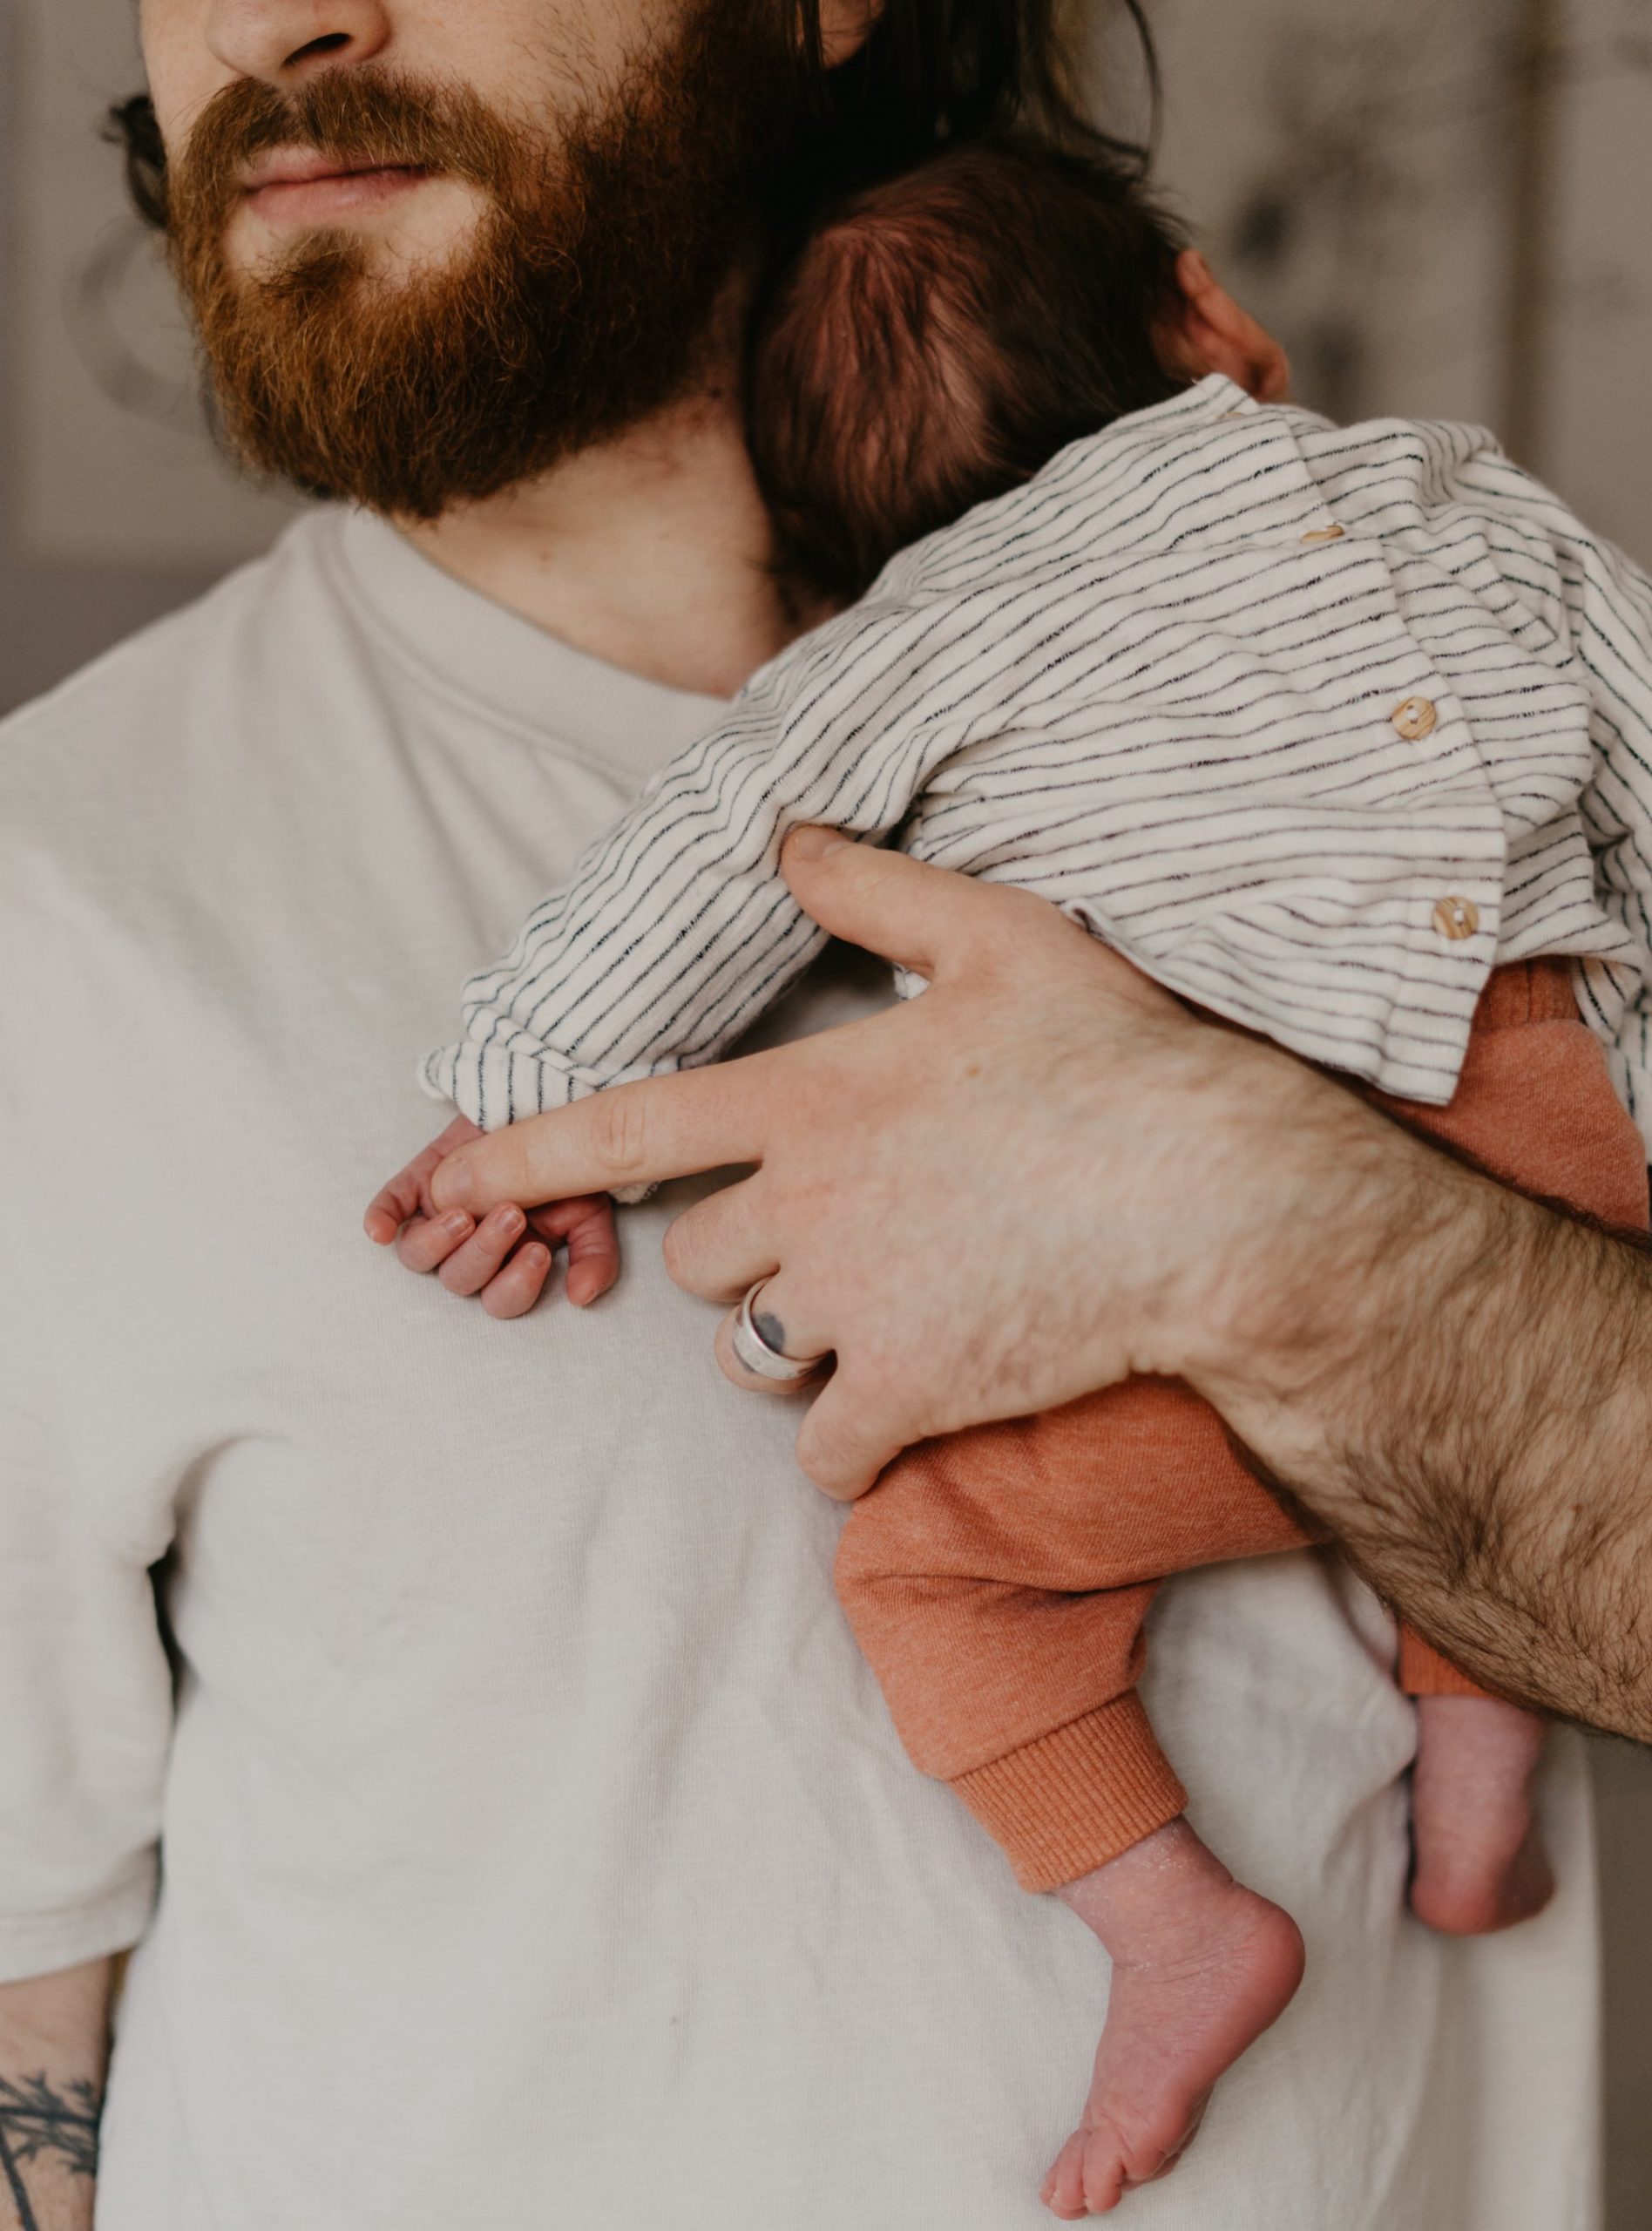 Guter Start Mit Baby – Interview Mit Der Systemischen Familientherapeutin Dr. Eliane Retz Über Bindungs- Und Bedürfnisorientierte Erziehung // Himbeer